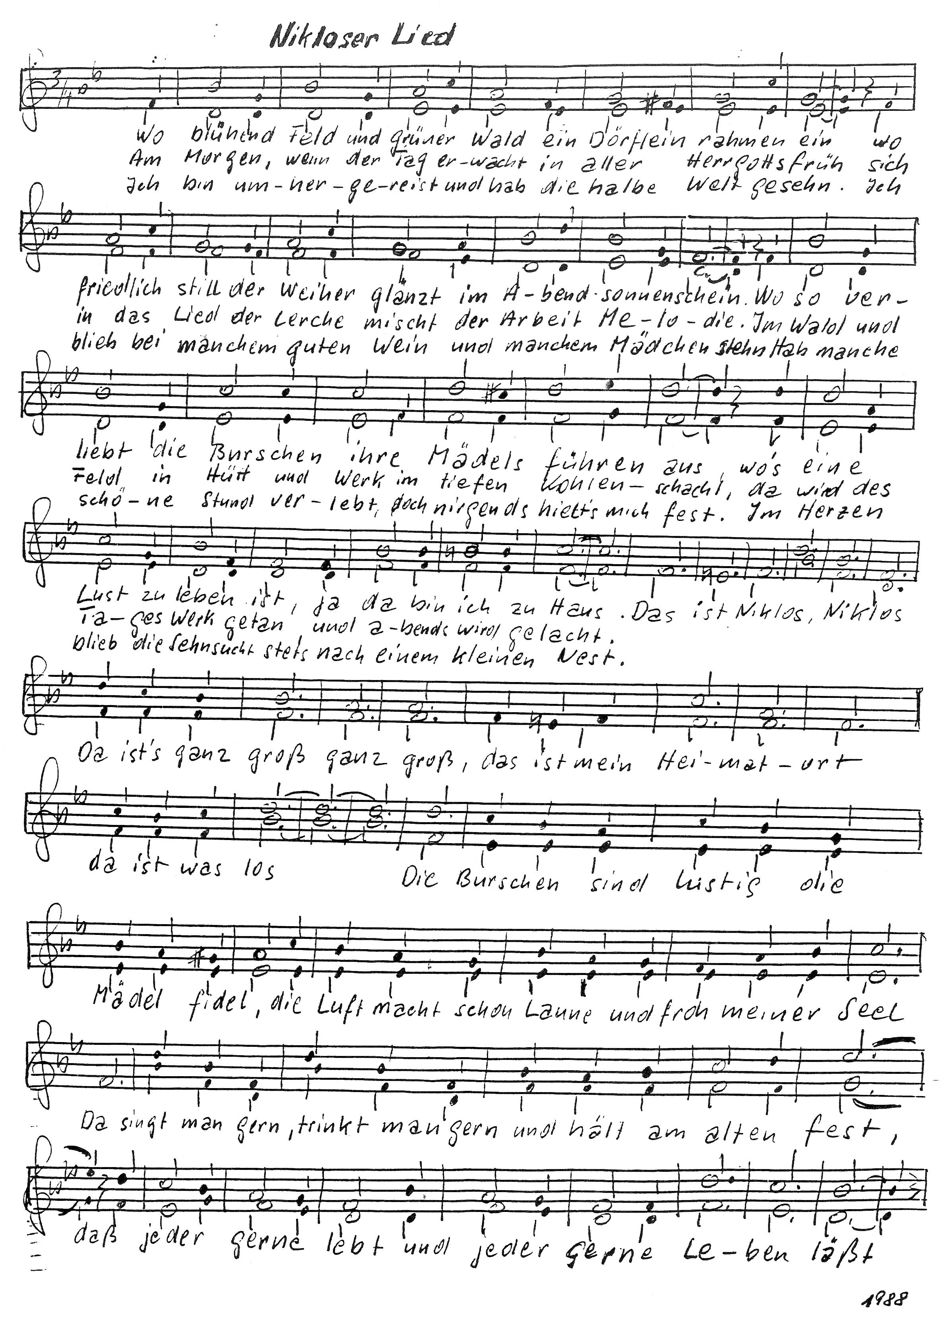 Die Noten des Niklooser Liedes, komponiert von Alfons Zieder